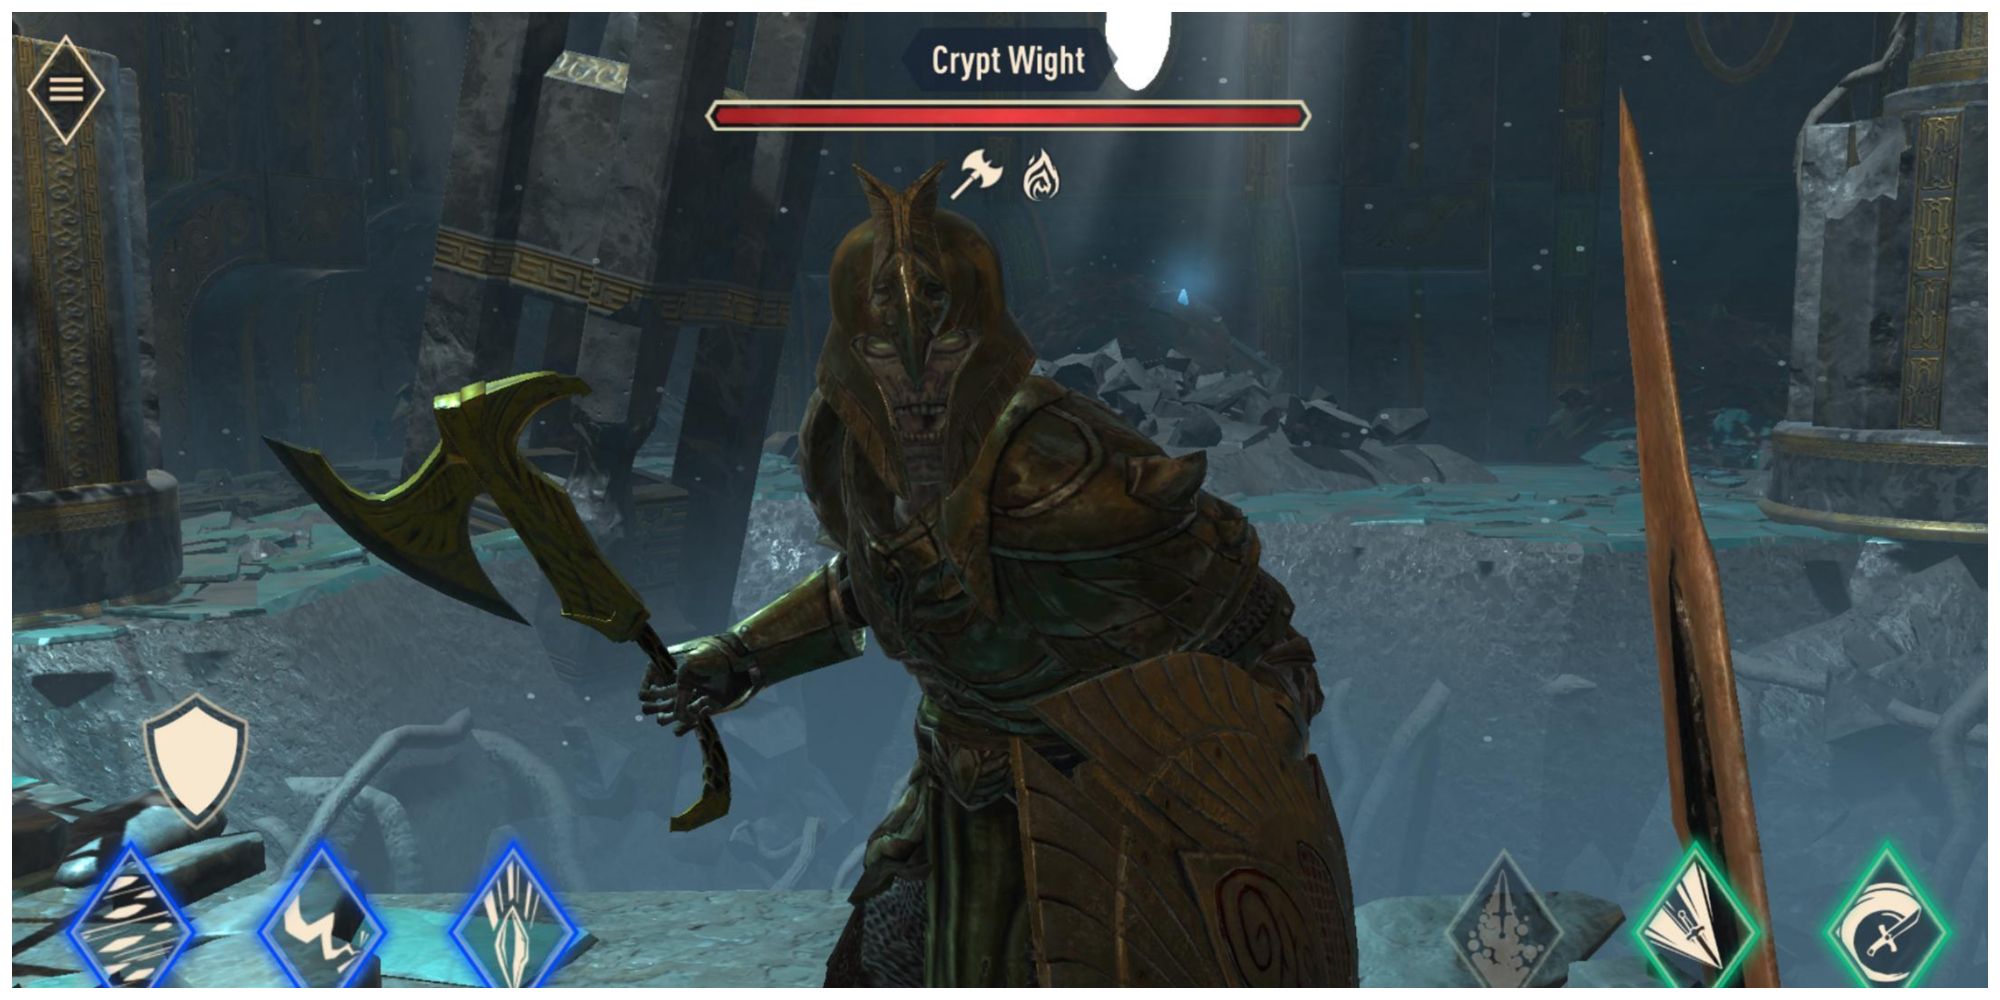 The Elder Scrolls: Blades' Crypt Wight